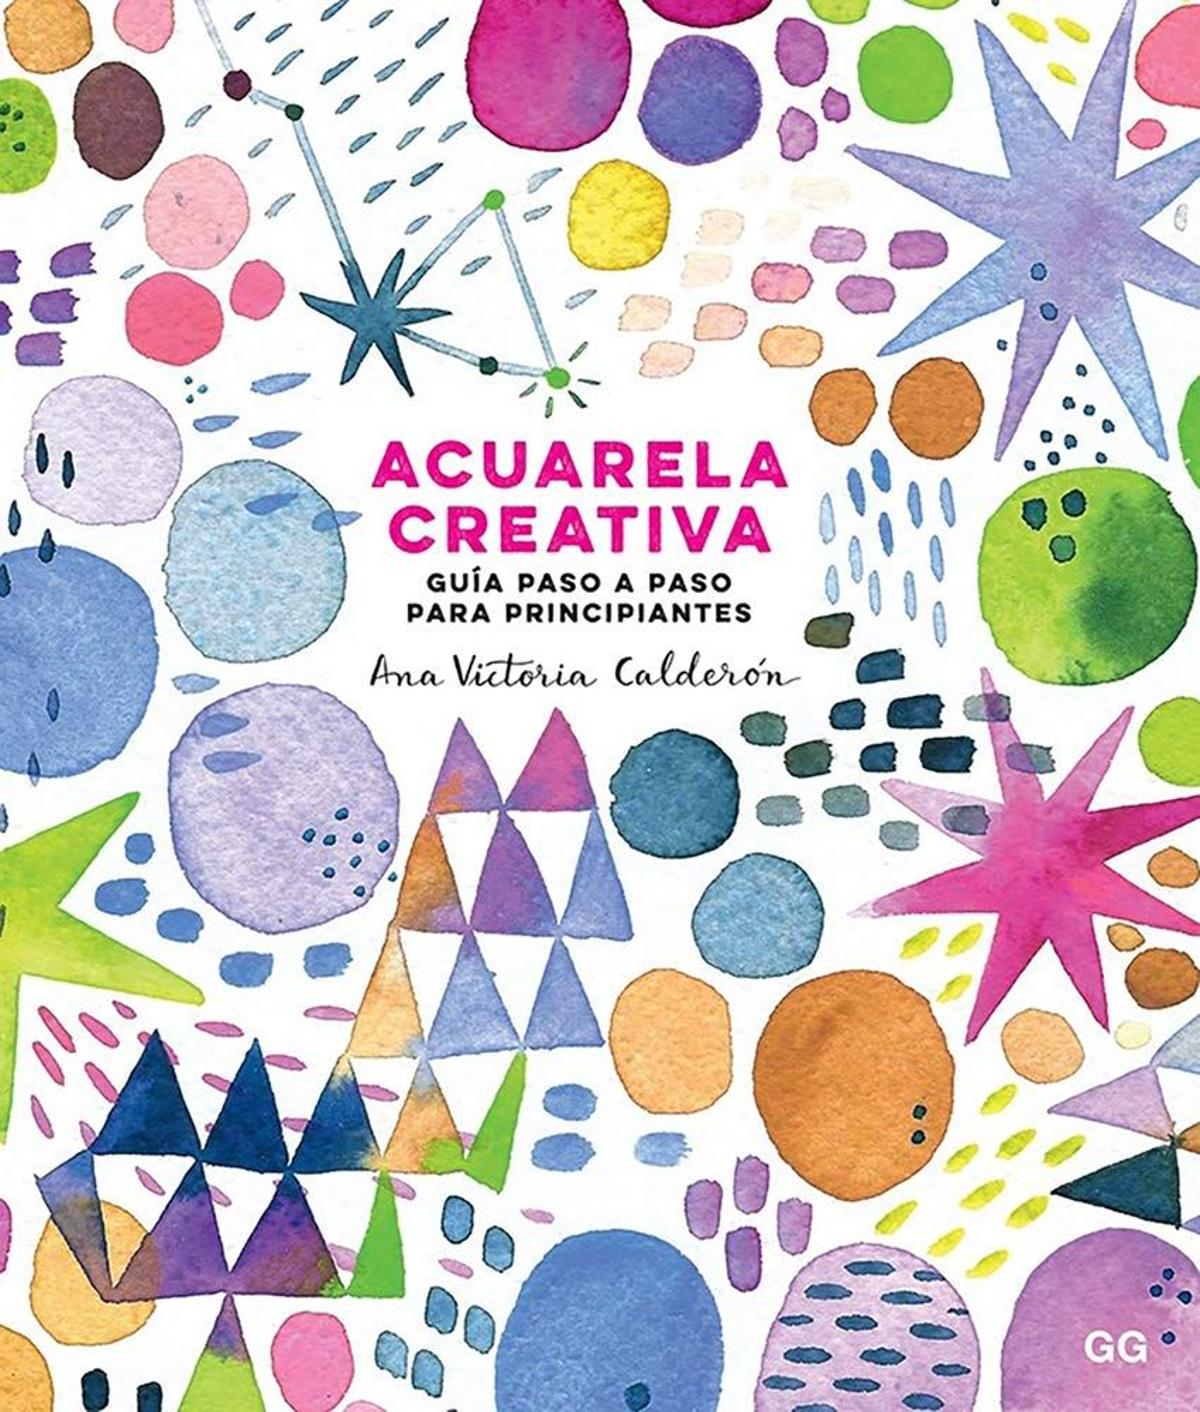 Acuarela creativa. Guía paso a paso para principiantes, de Ana Victoria Calderón (16,05 euros)